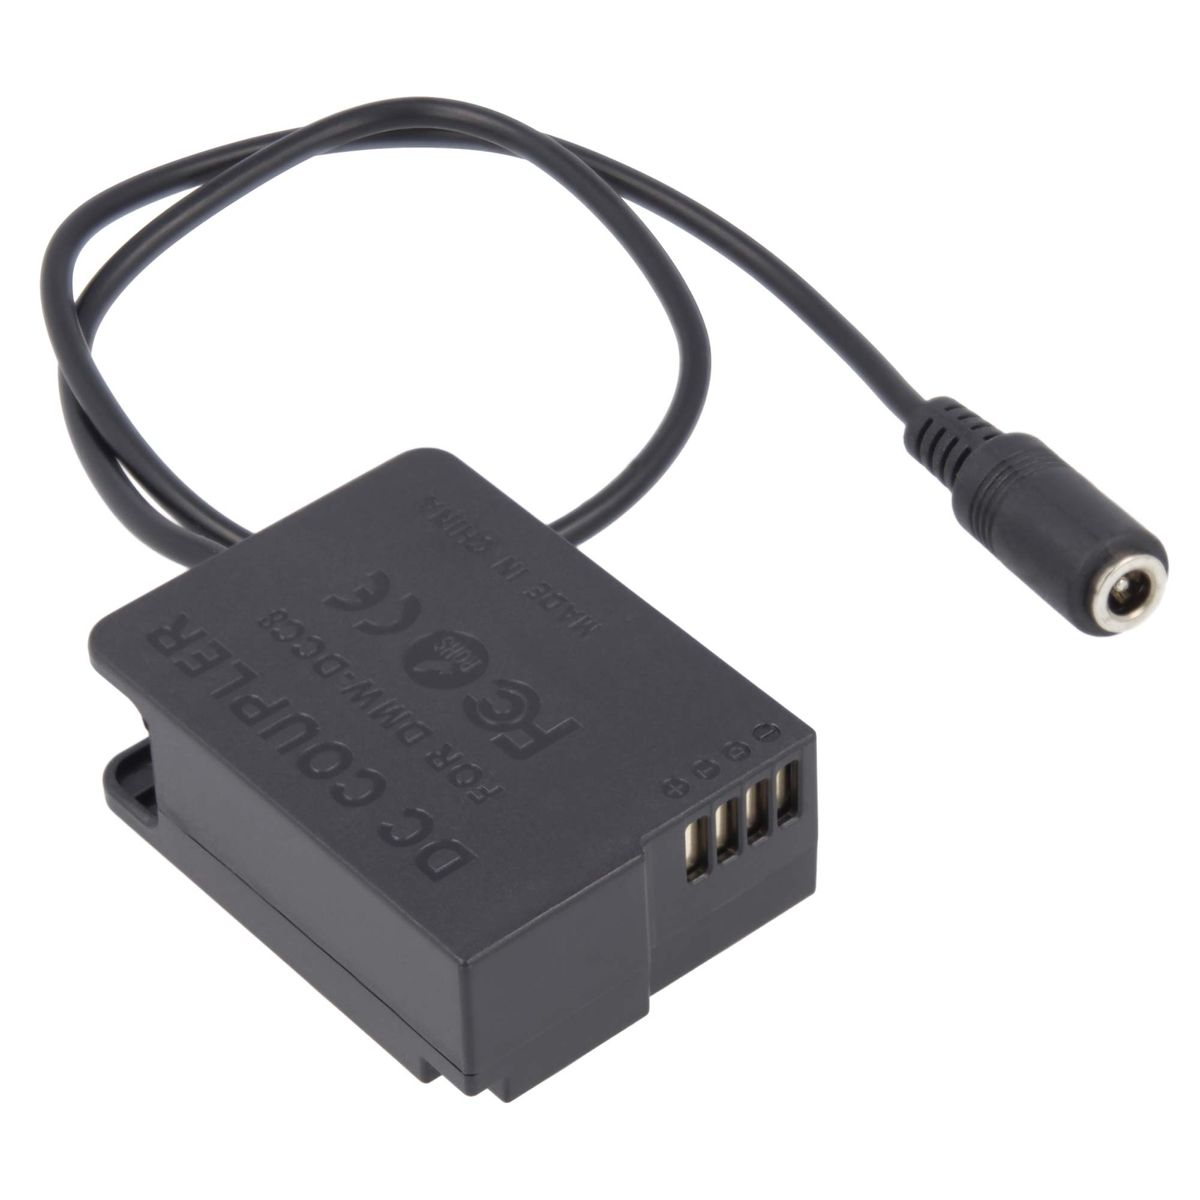 AKKU-KING Ladegerät + Adapter kompatibel mit Panasonic, keine Angabe USB-C DCC8 Kuppler Panasonic